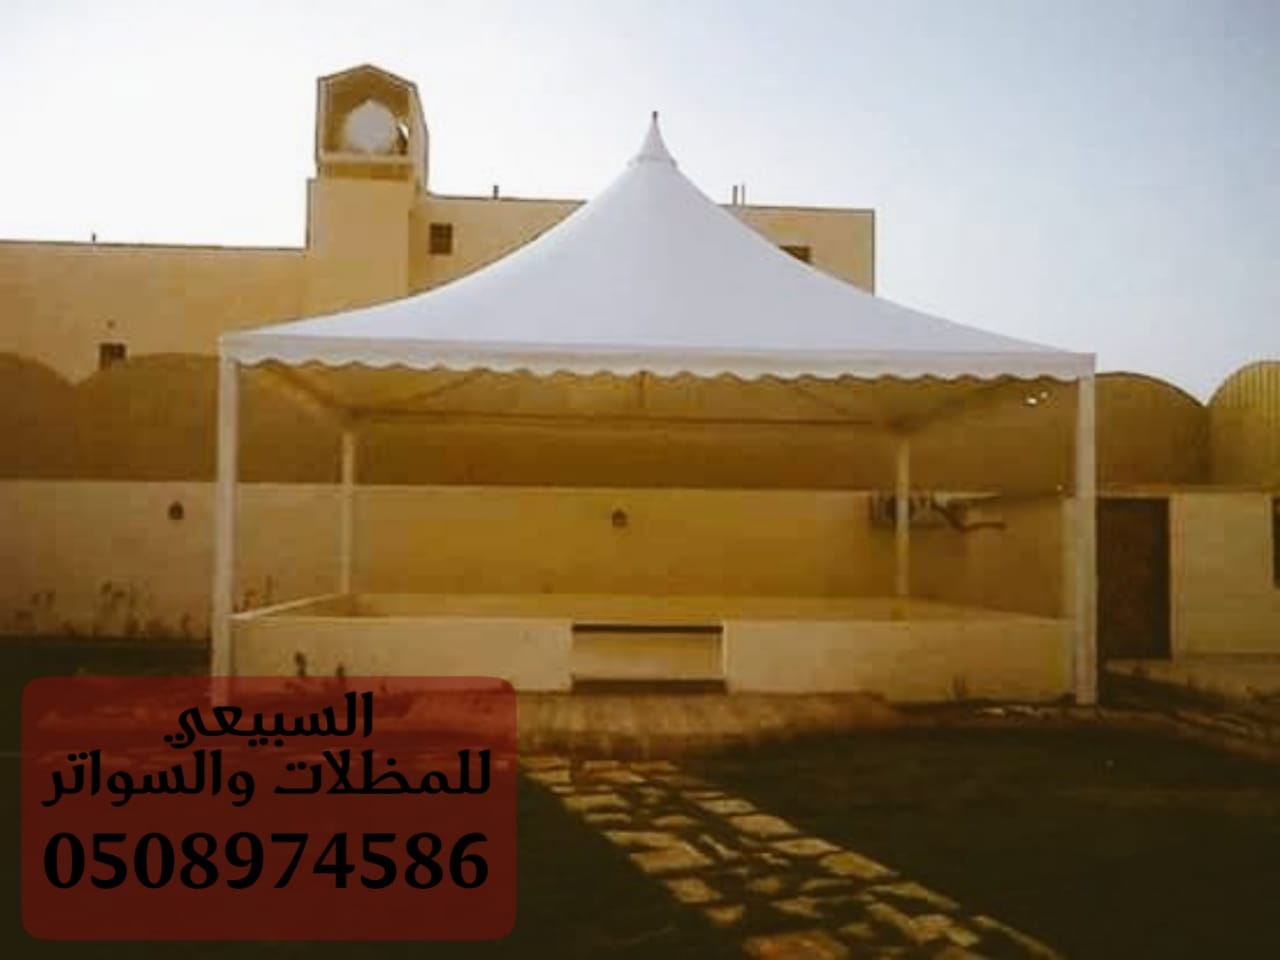 مظلات سيارات متحركة الرياض , مظلات قماش بي في سي الرياض ,  0508974586 P_1740pe3n53